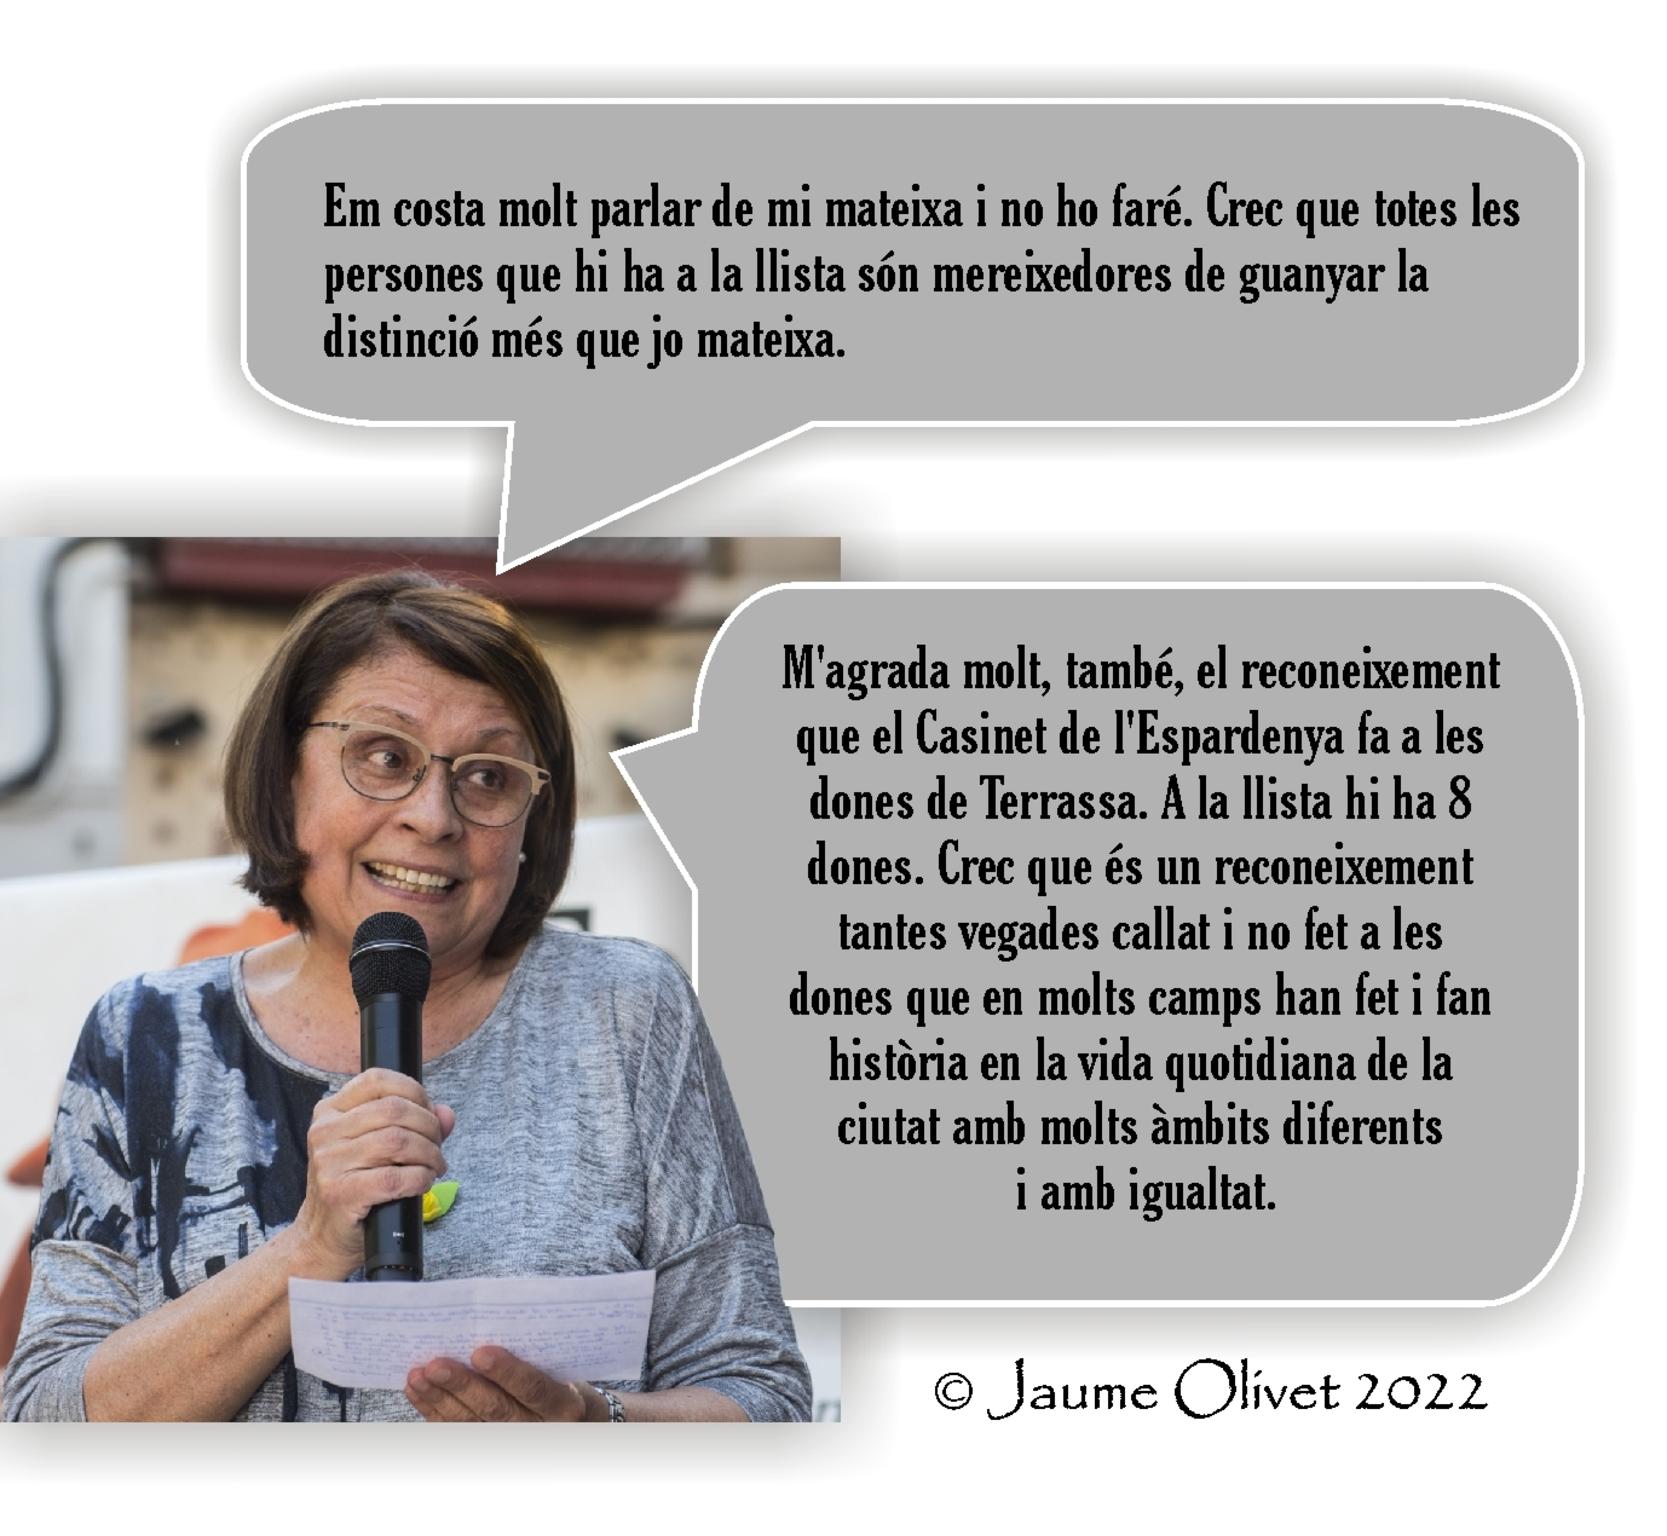 © Jaume Olivet 2022